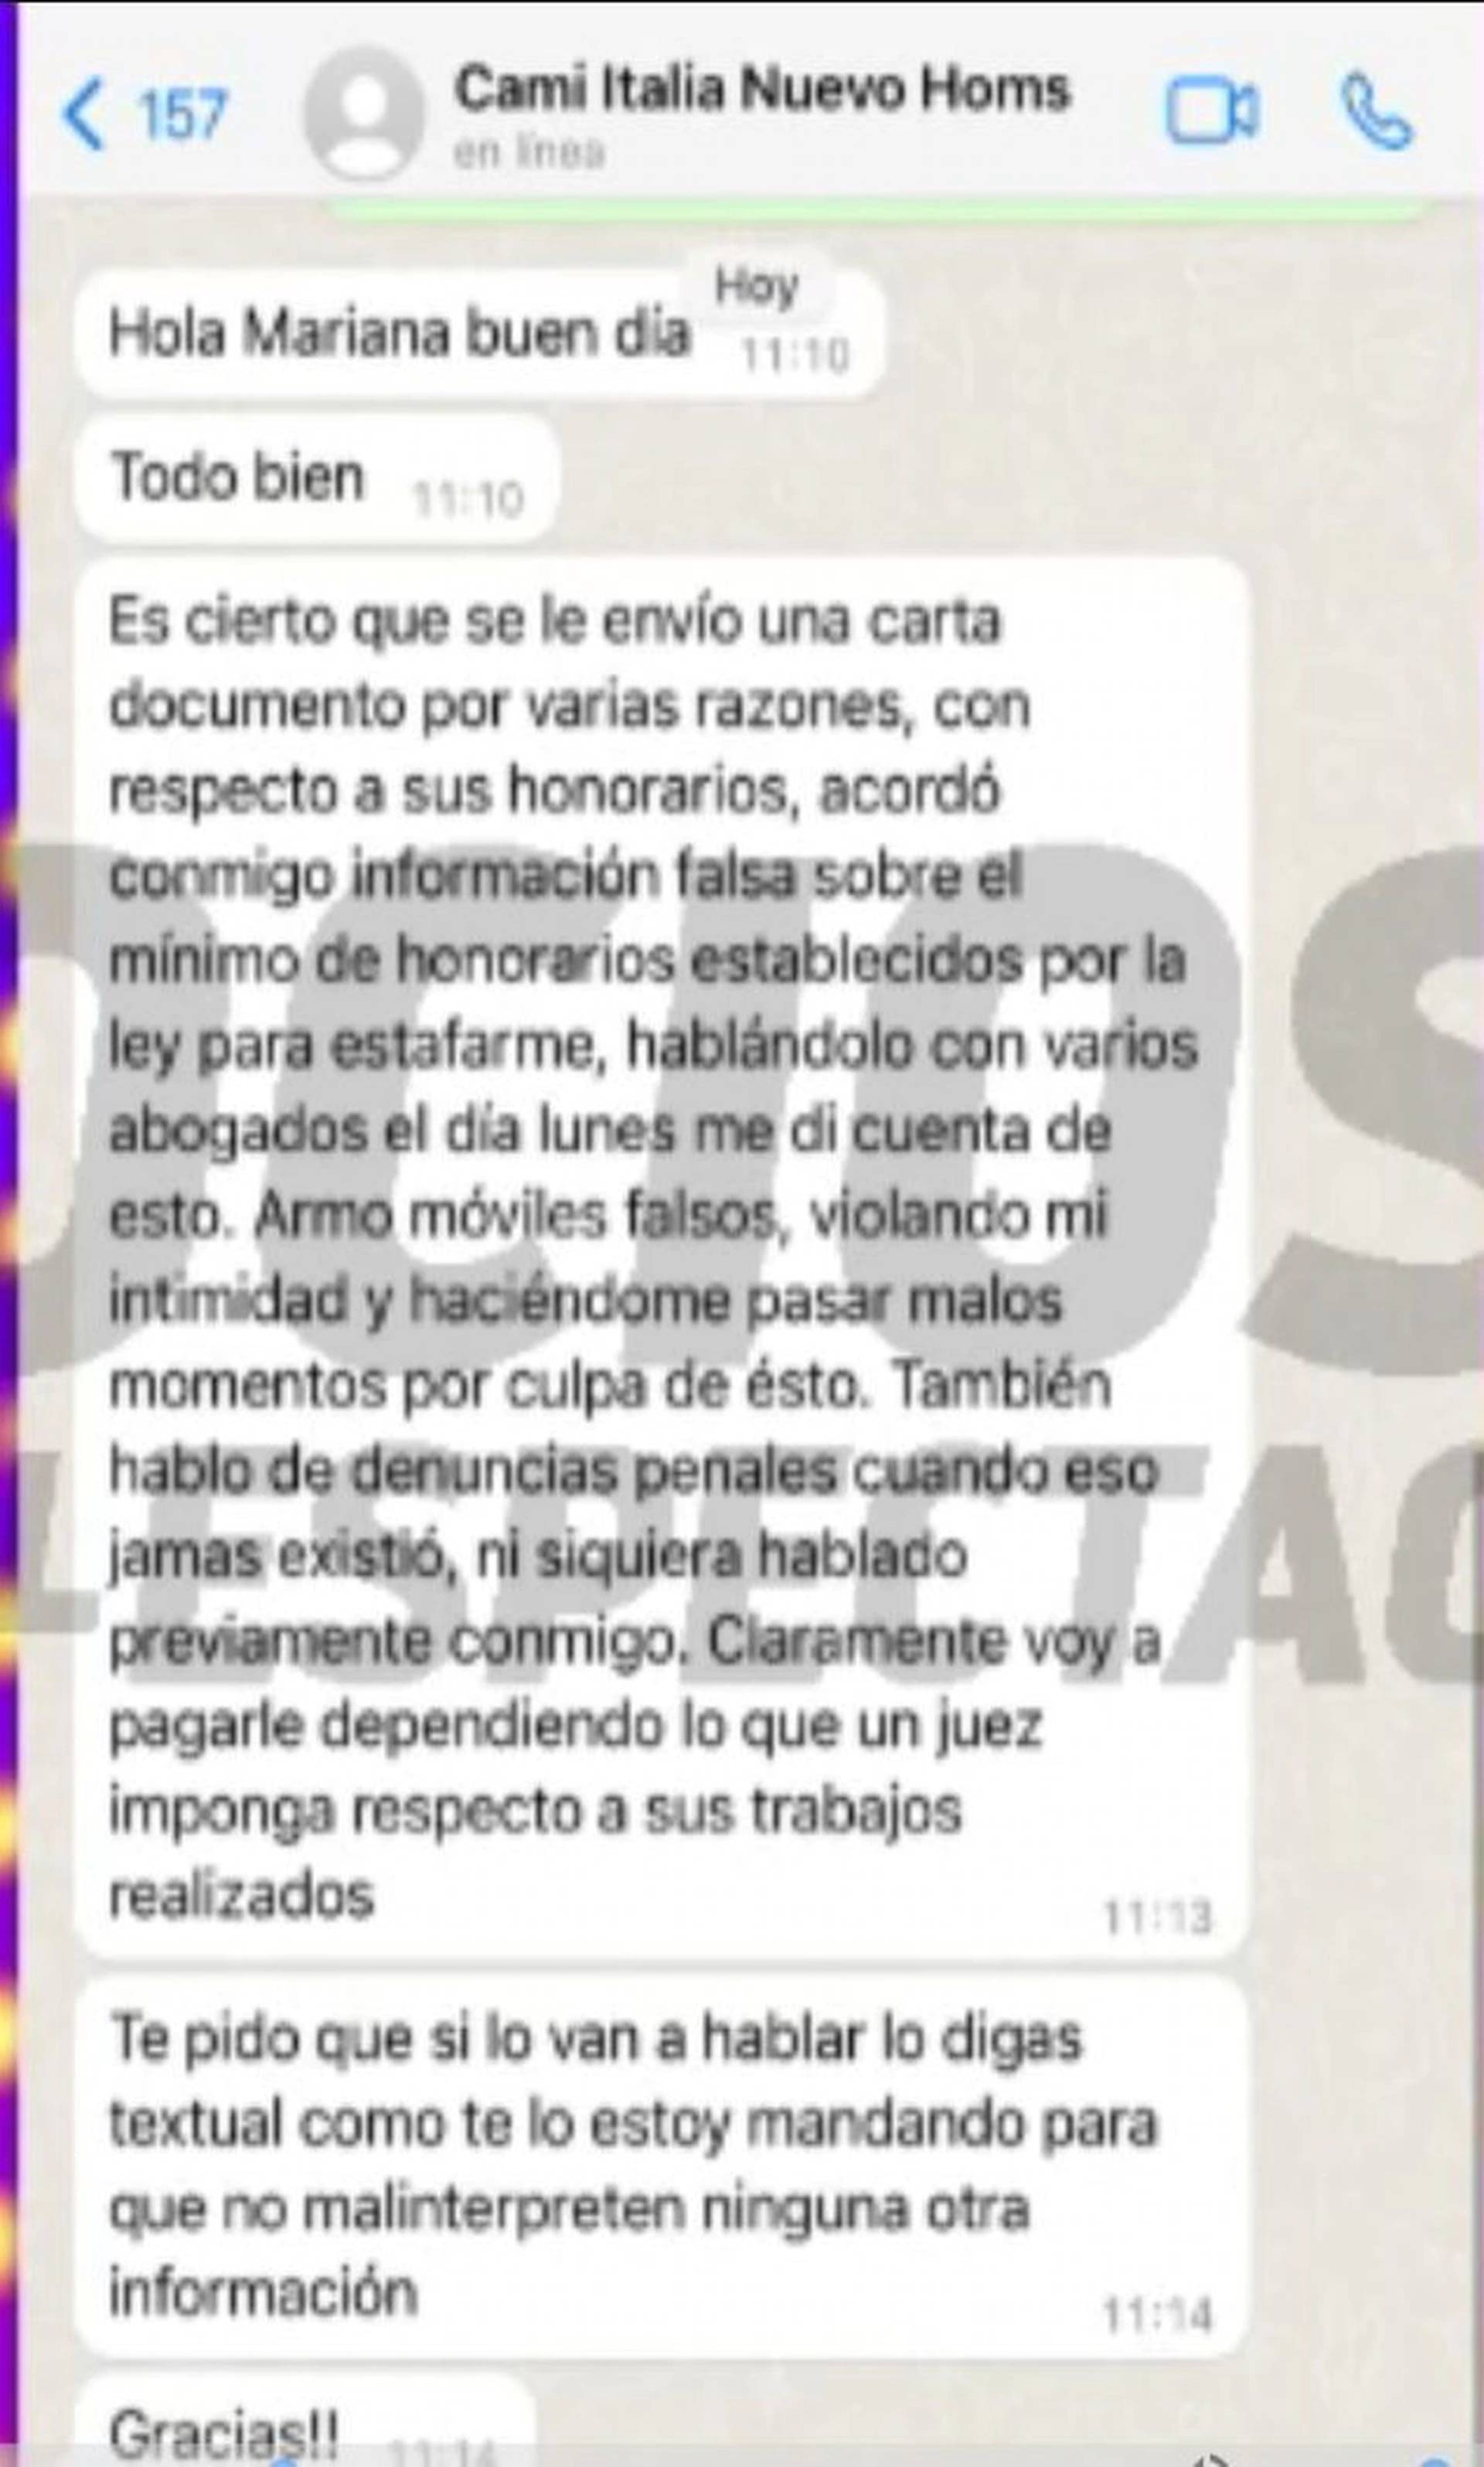 El mensaje de Camila Homs sobre el conflicto con el abogado Trimarco